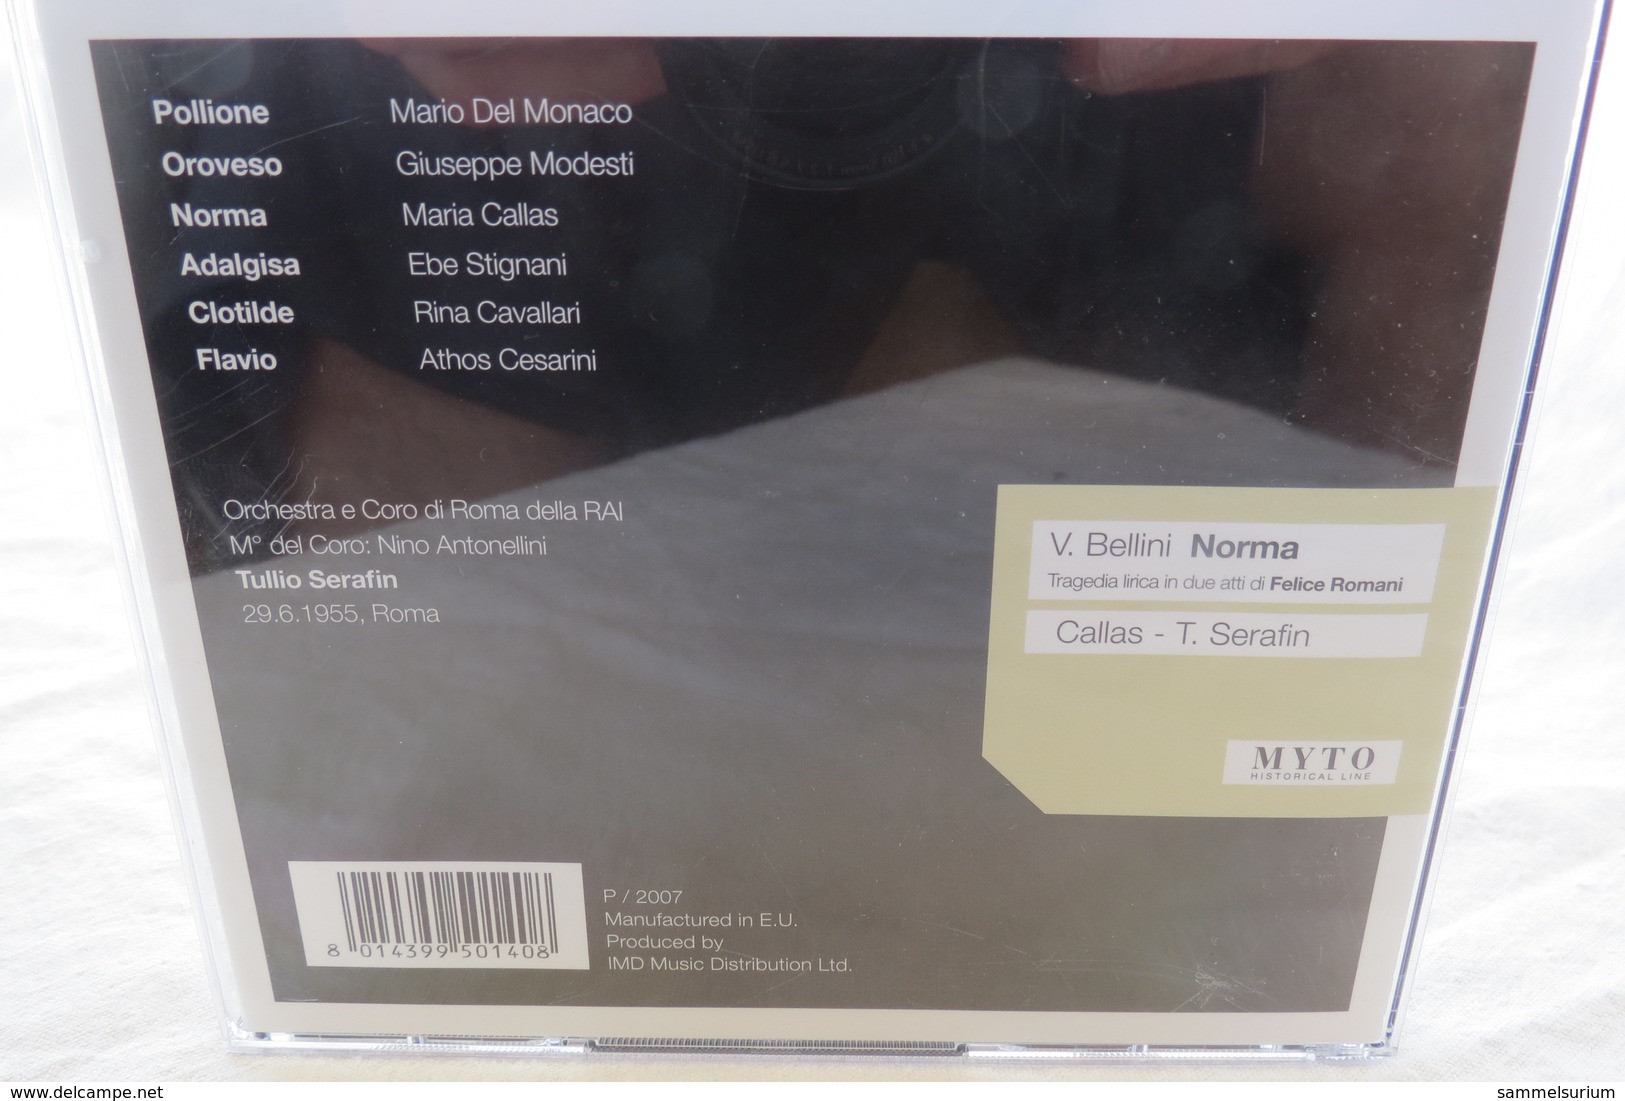 2 CDs "Vincenzo Bellini - Norma" M. Callas, Tullio Serafin - Opera / Operette